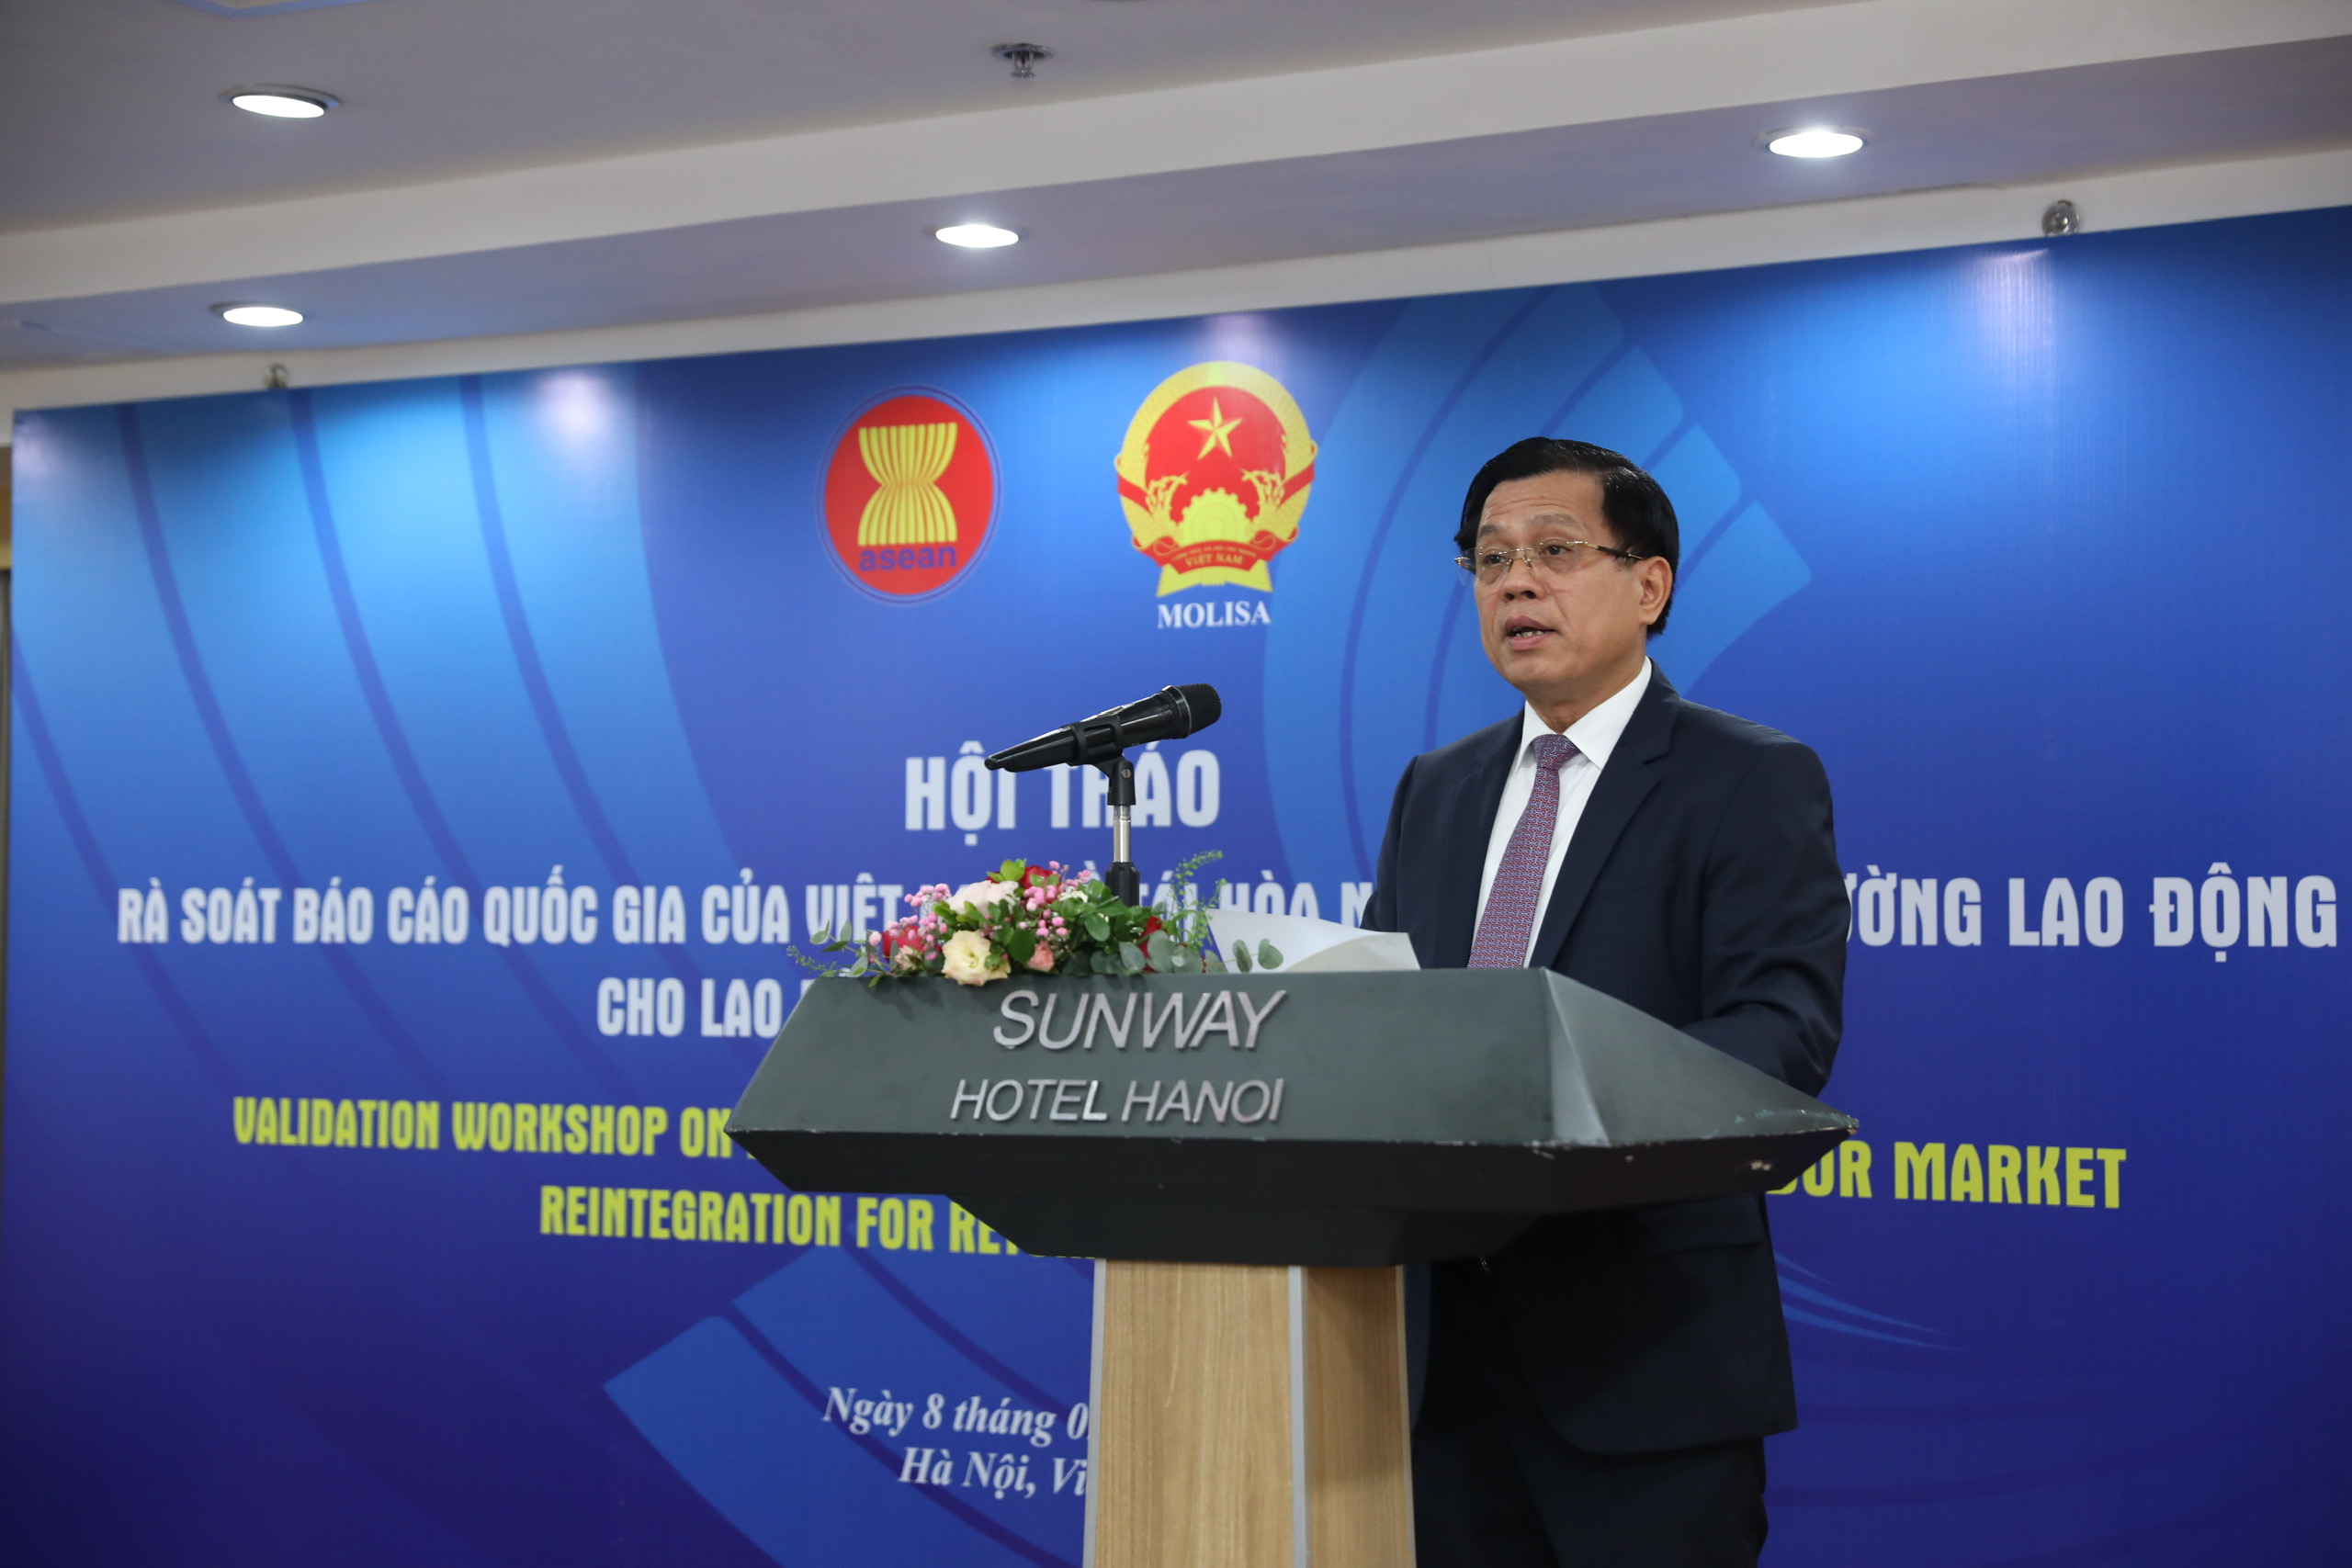 Hội thảo đánh giá kết quả nghiên cứu quốc gia của Việt Nam về Tái hòa nhập việc làm cho lao động di cư về nước trong khu vực ASEAN